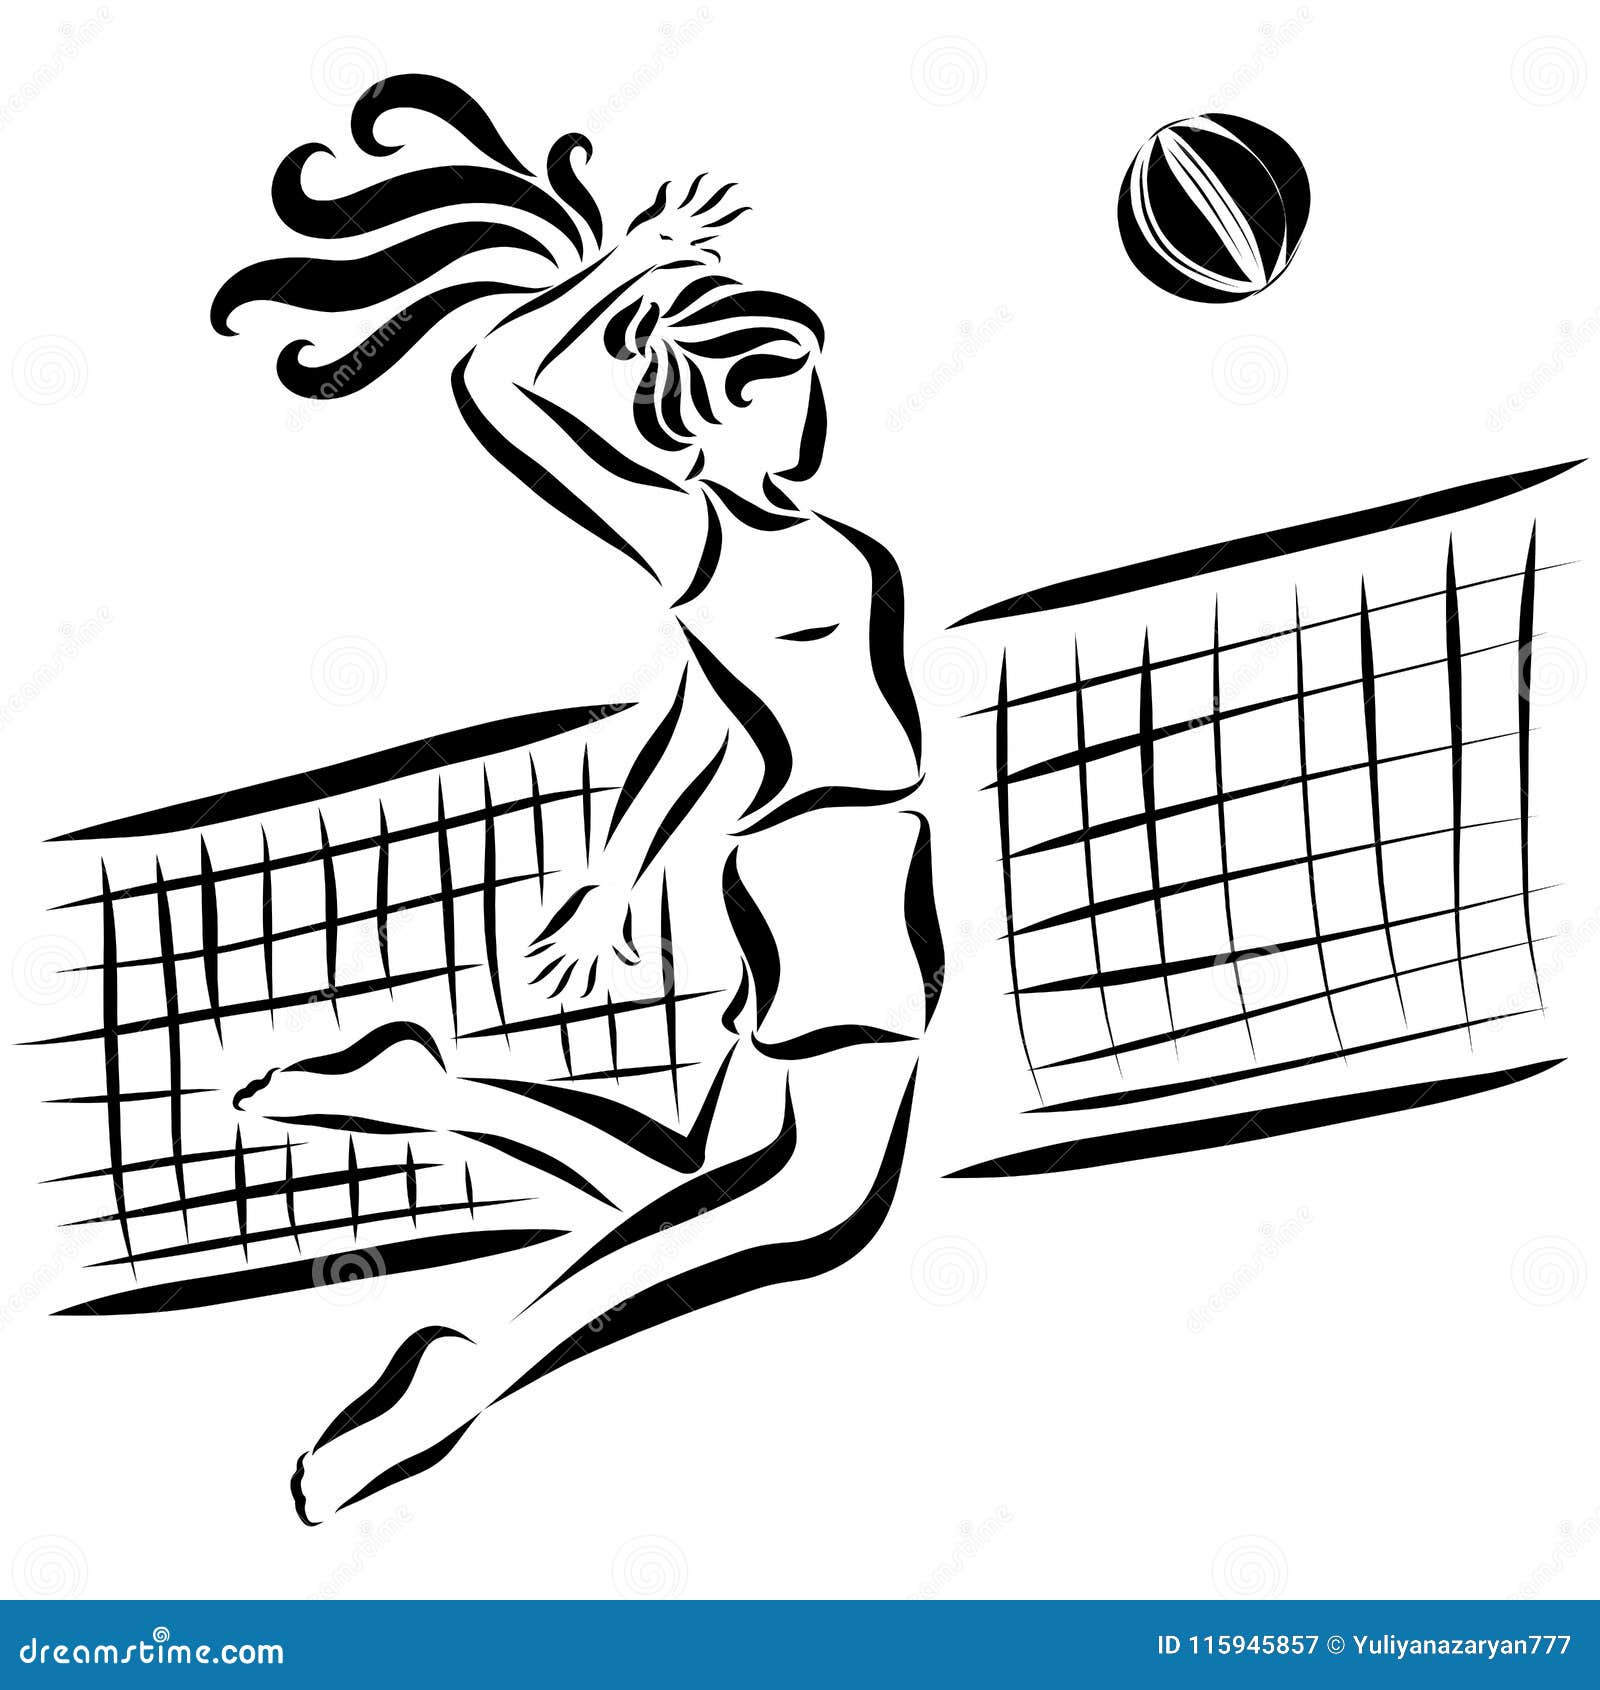 Free volleyball net - Vector Art